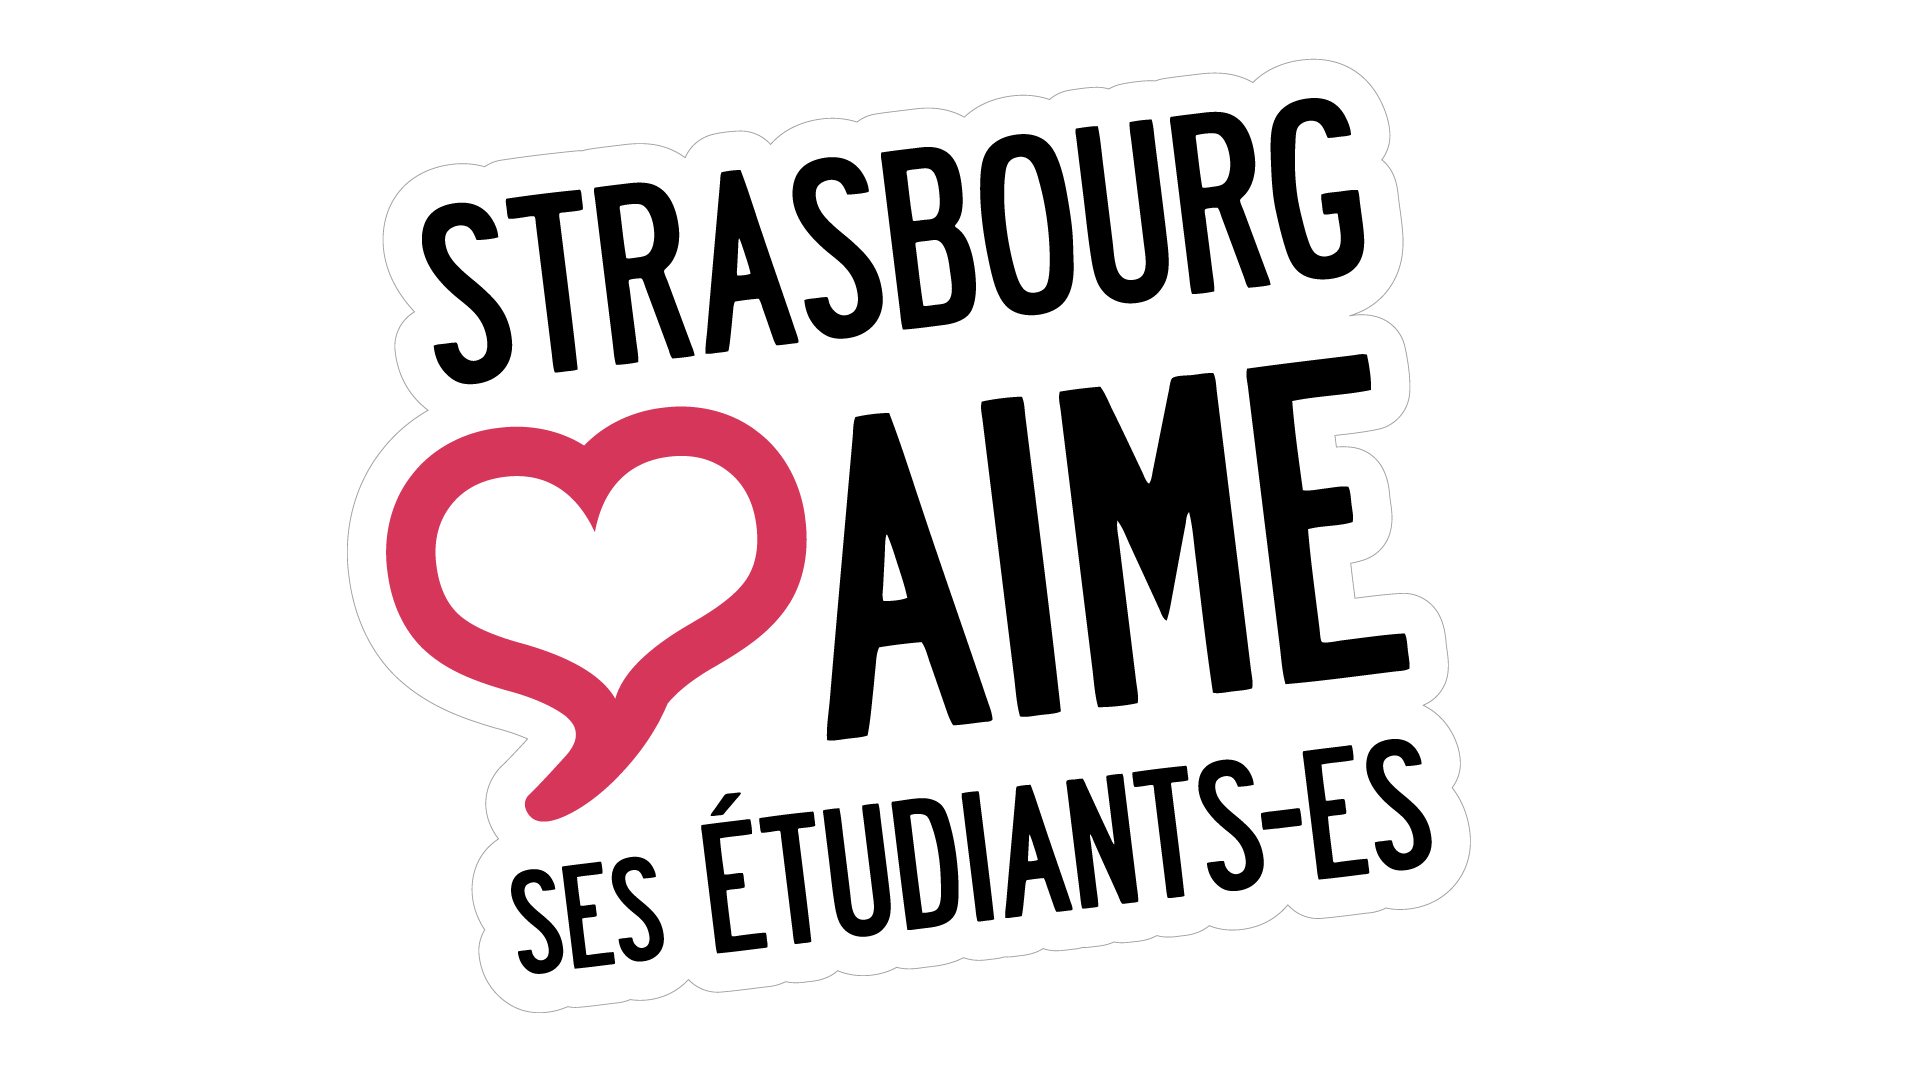 Strasbourg aime ses étudiants